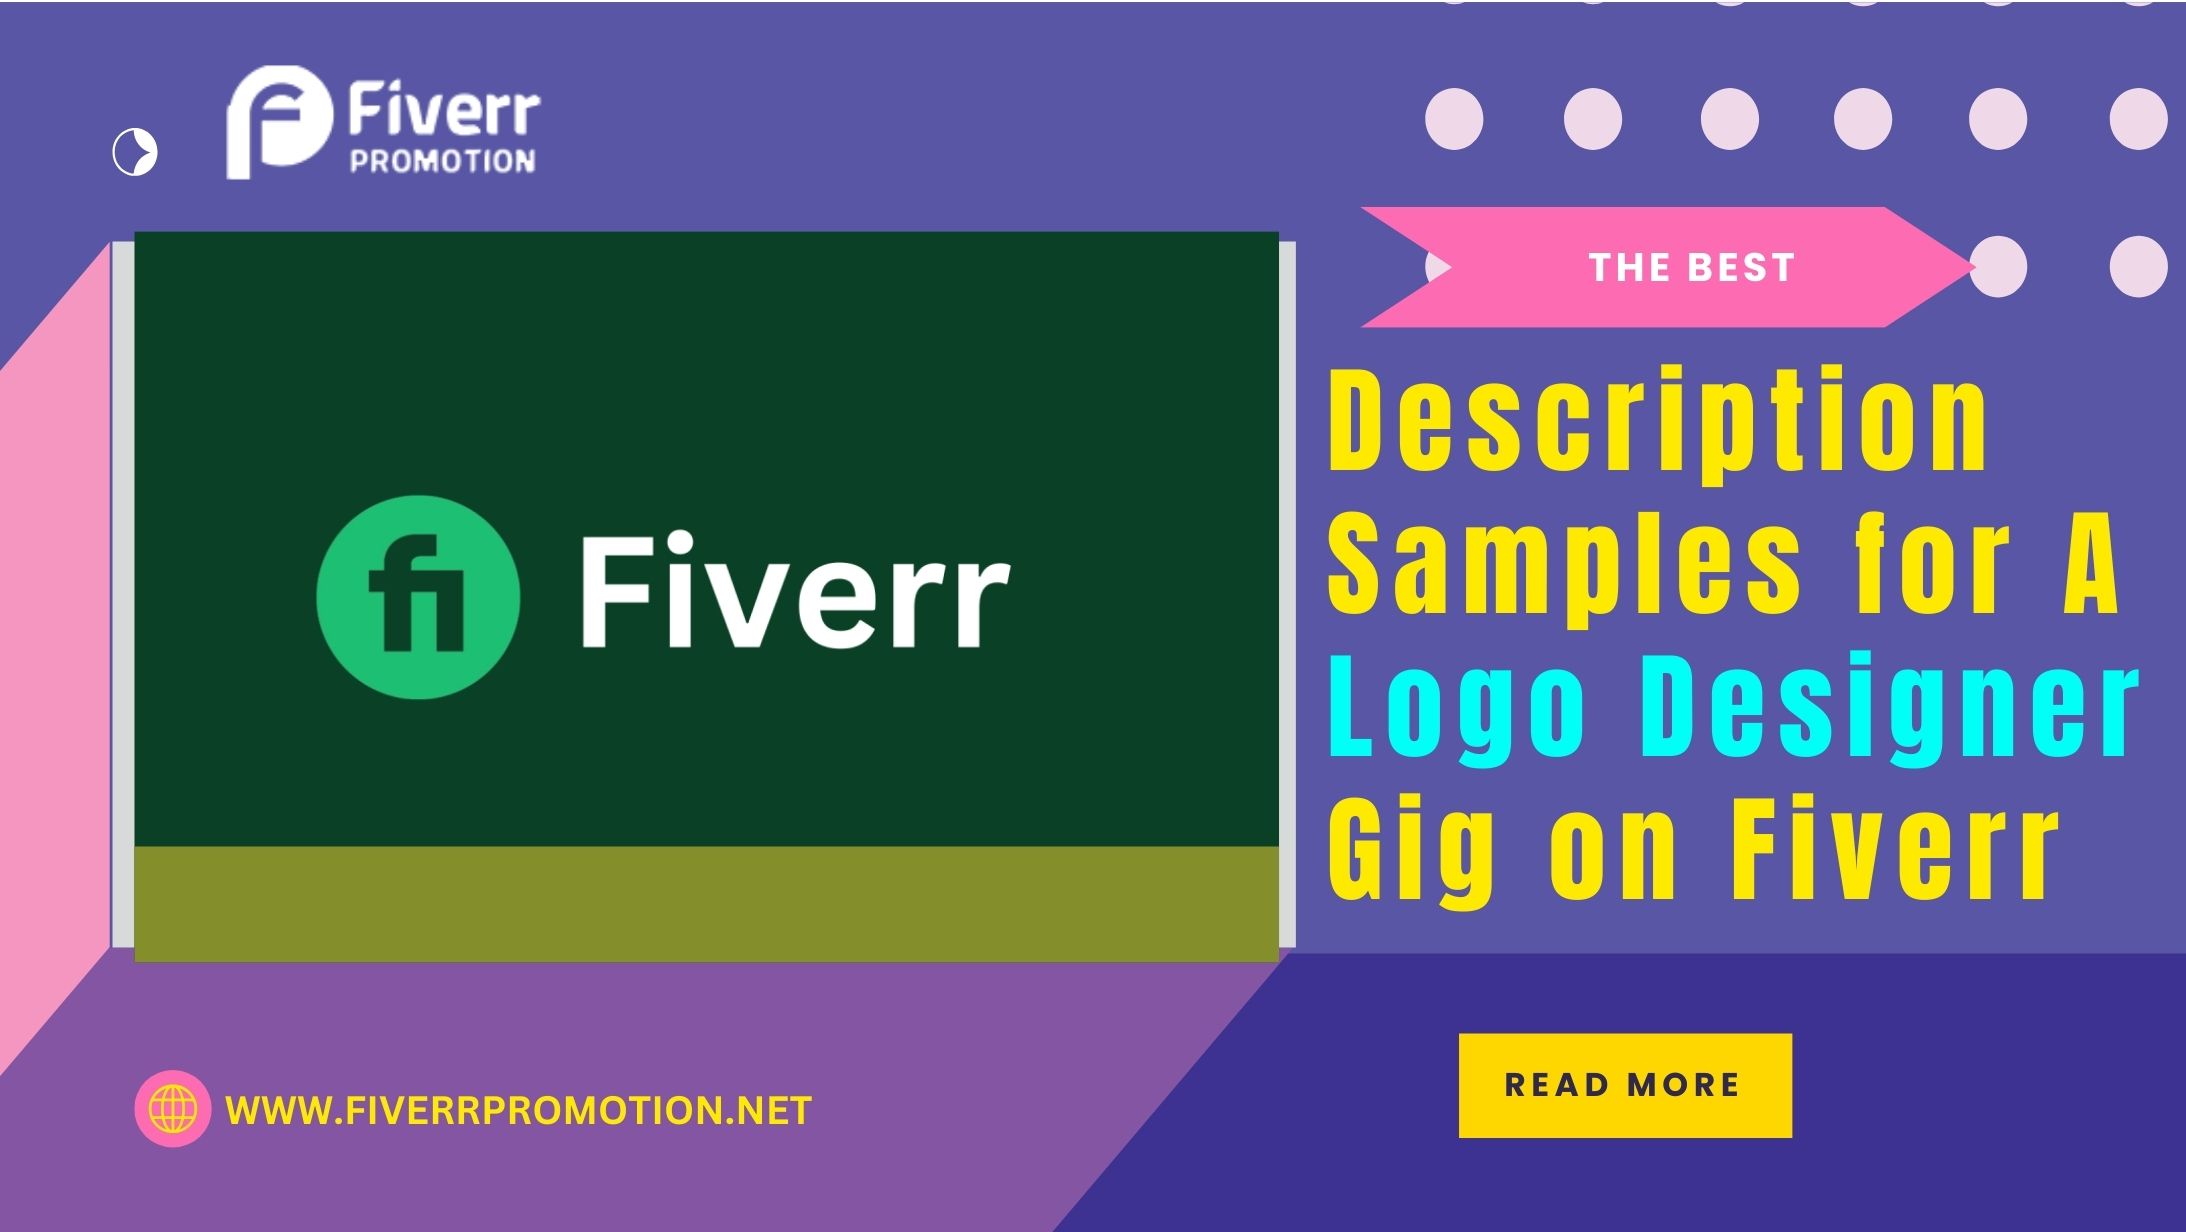 The Best Description Samples for A Logo Designer Gig on Fiverr